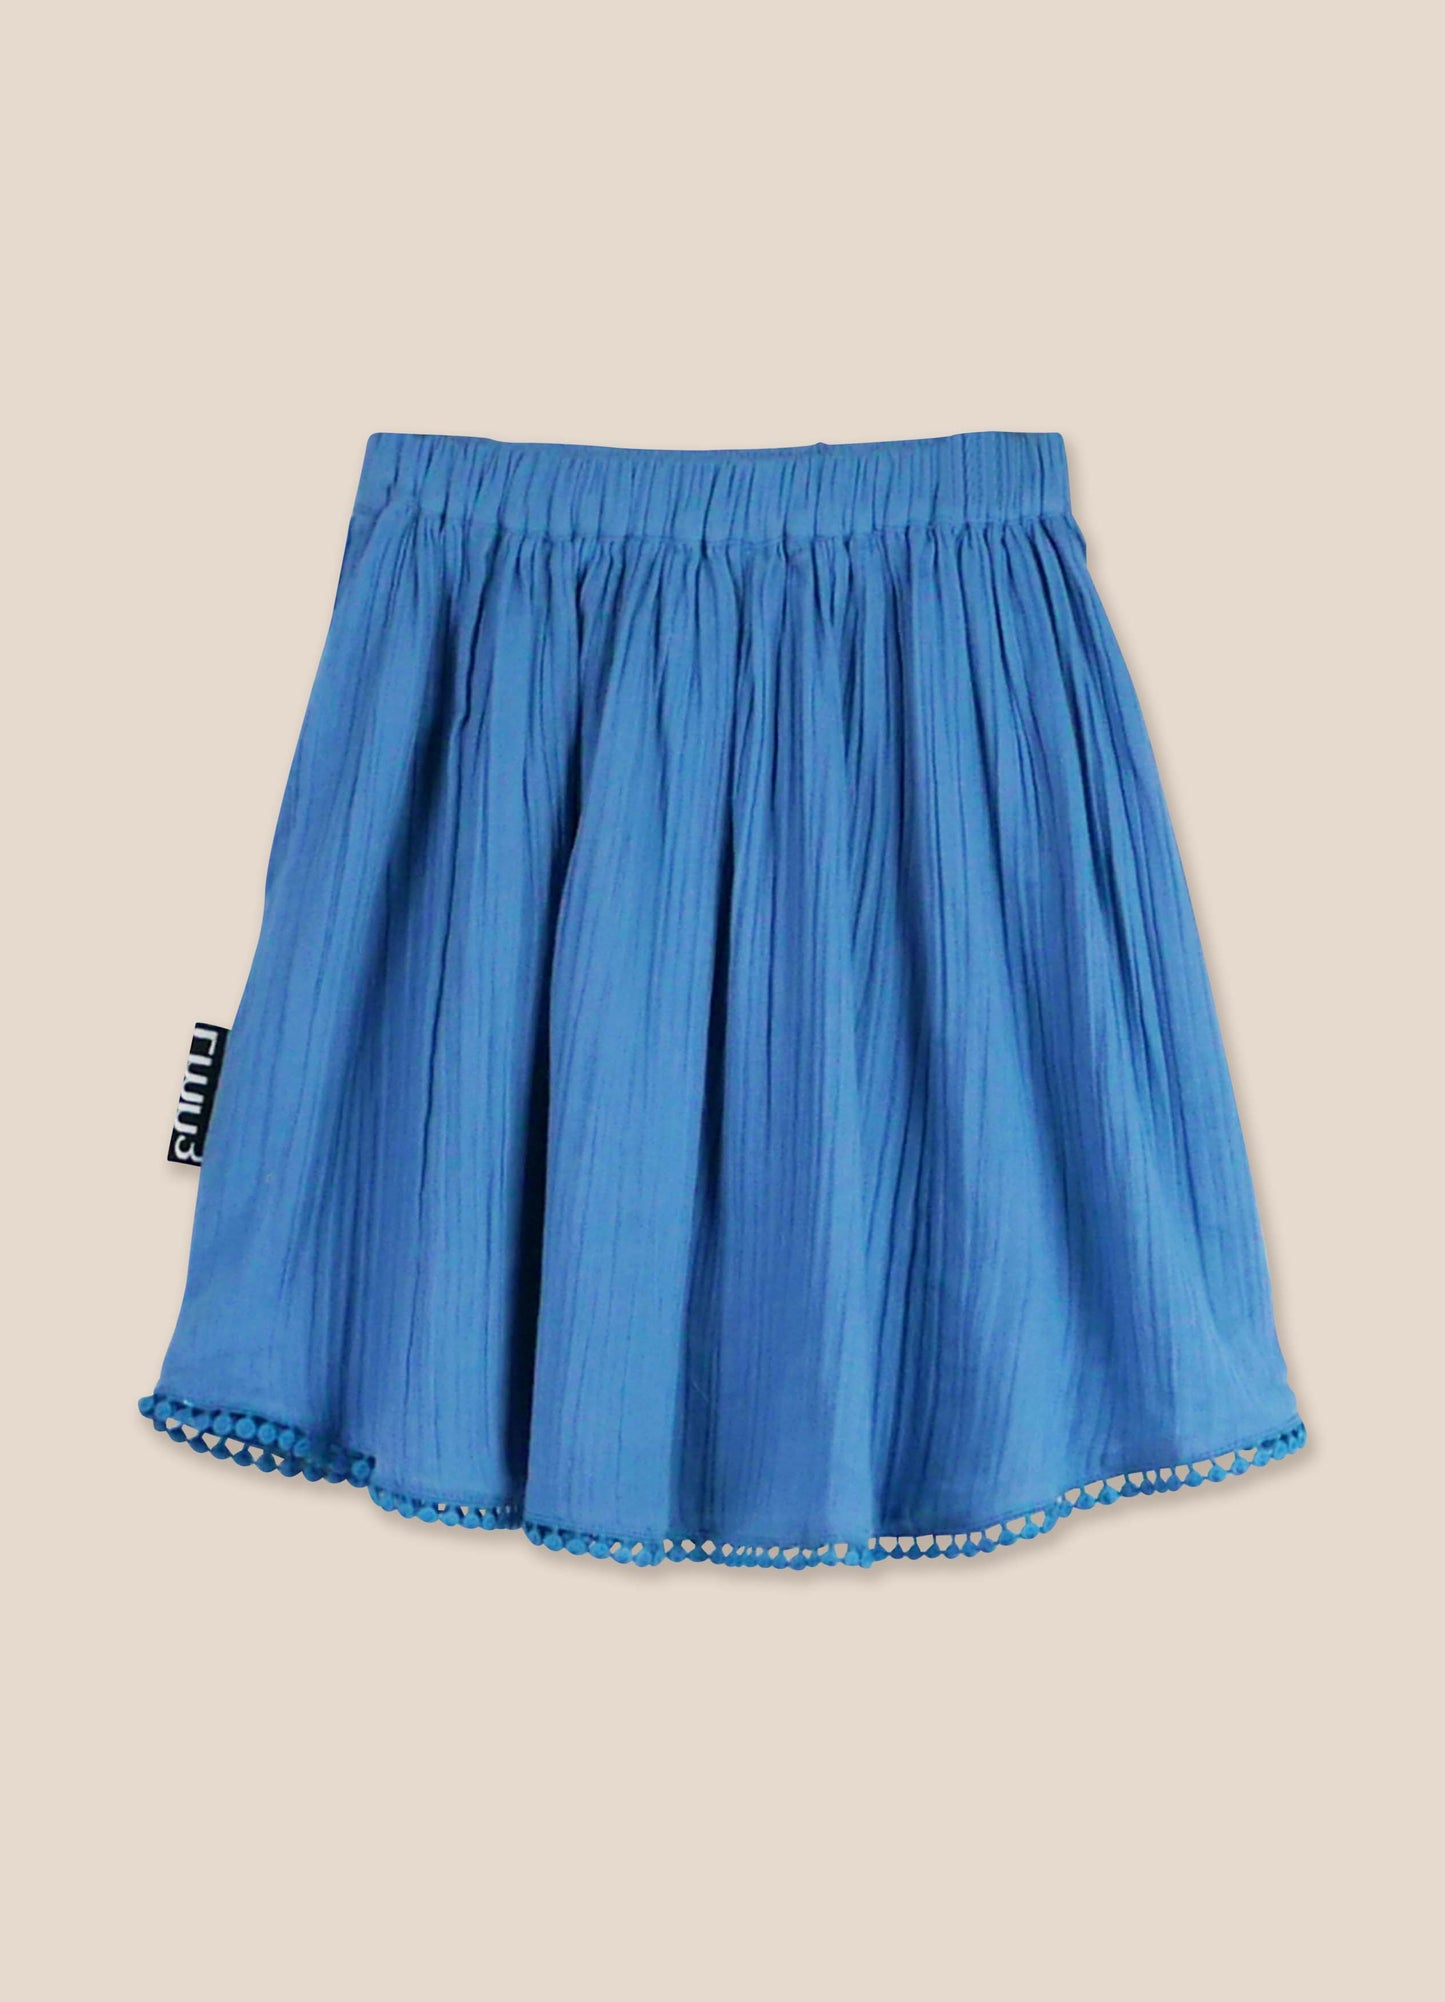 Skirt No. 25 Provincial Blue